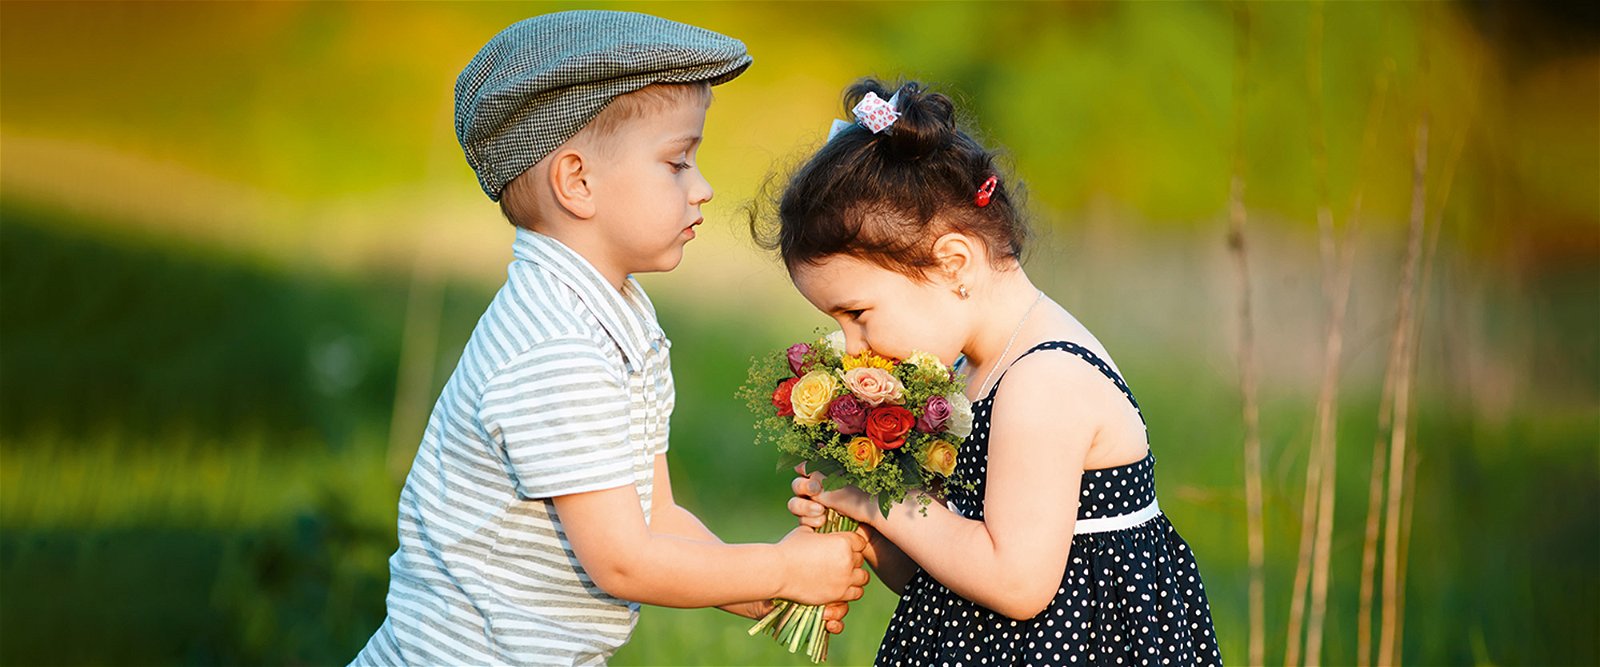 Blumensprache - Kleiner Junge schenkt Mädchen Blumen